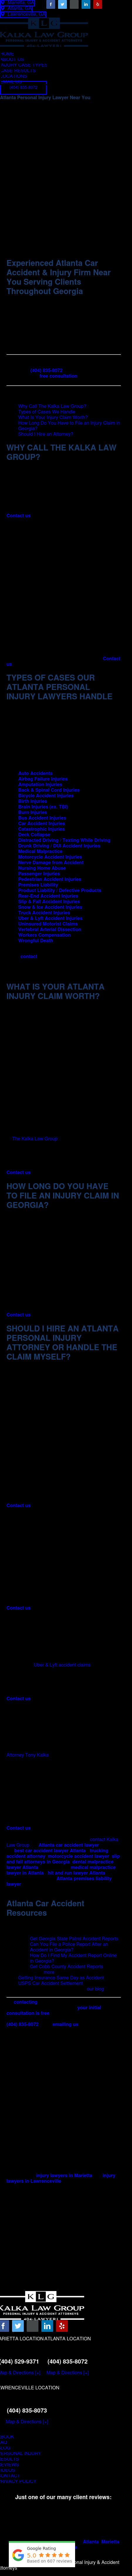 Kalka & Baer, LLC - Atlanta GA Lawyers